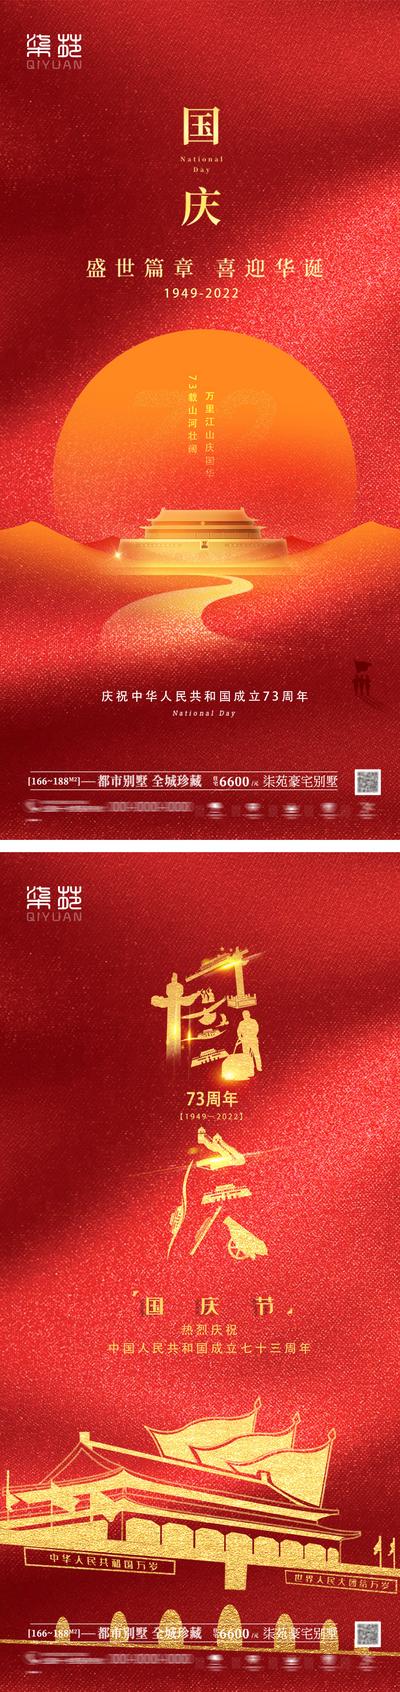 南门网 广告 海报 节日 国庆 红金 系列